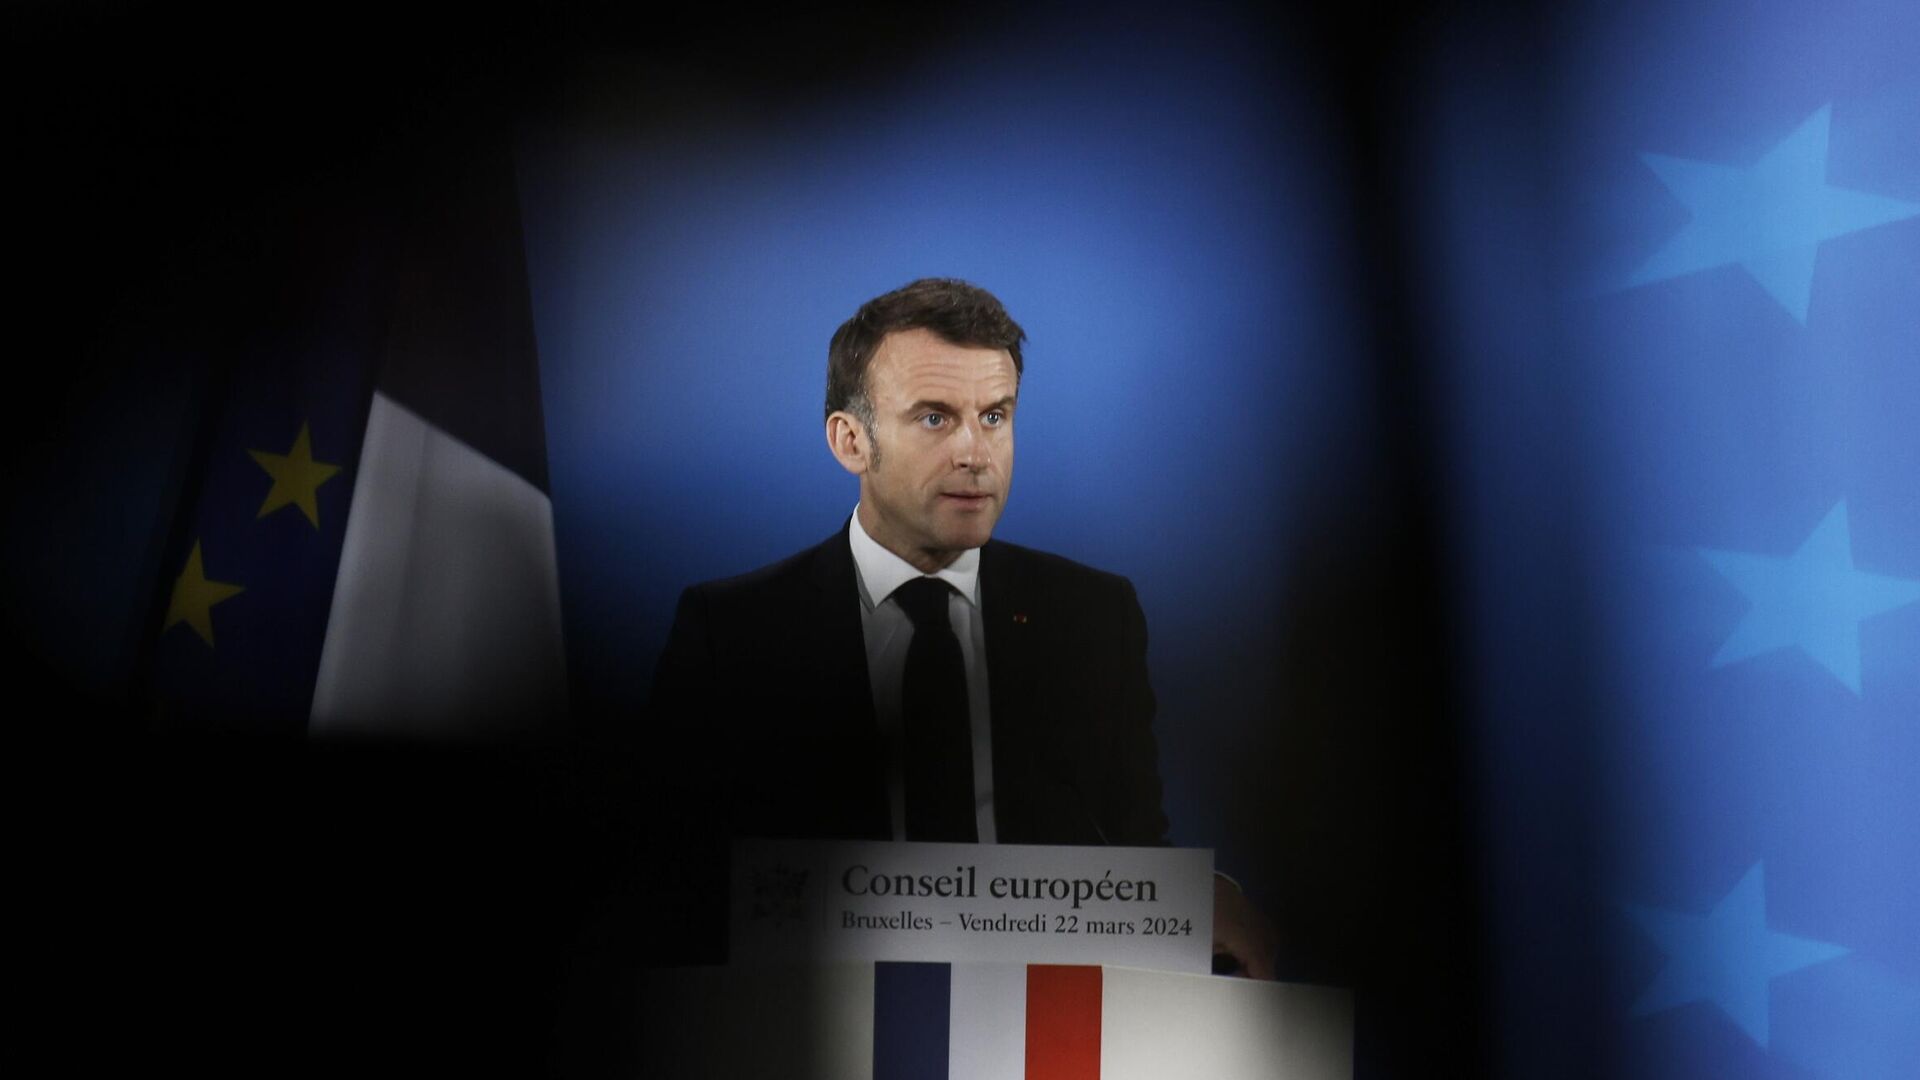 За терактом в России и планами атак во Франции стоит ИГ*, утверждает Макрон